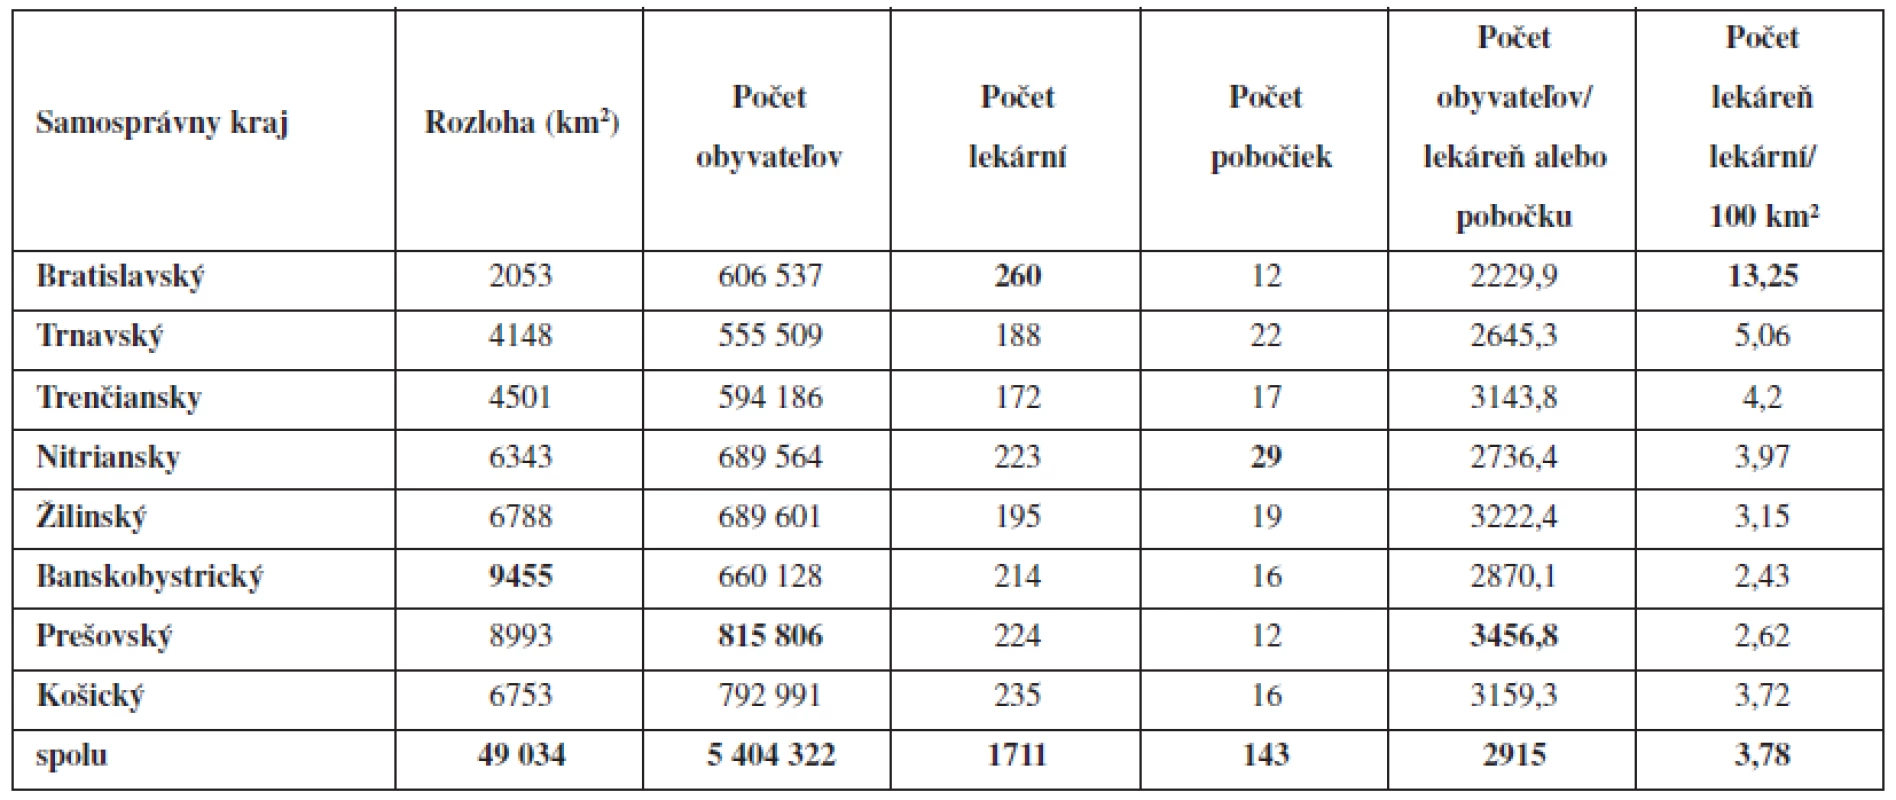 Demografické a geografické údaje o verejných lekárňach a pobočkách verejných lekární v Slovenskej republike k 31. 12. 2011 (počet lekární, počet pobočiek verených lekární, počet obyvateľov na jednu lekáreň, počet lekární na 100 km&lt;sup&gt;2&lt;/sup&gt;)